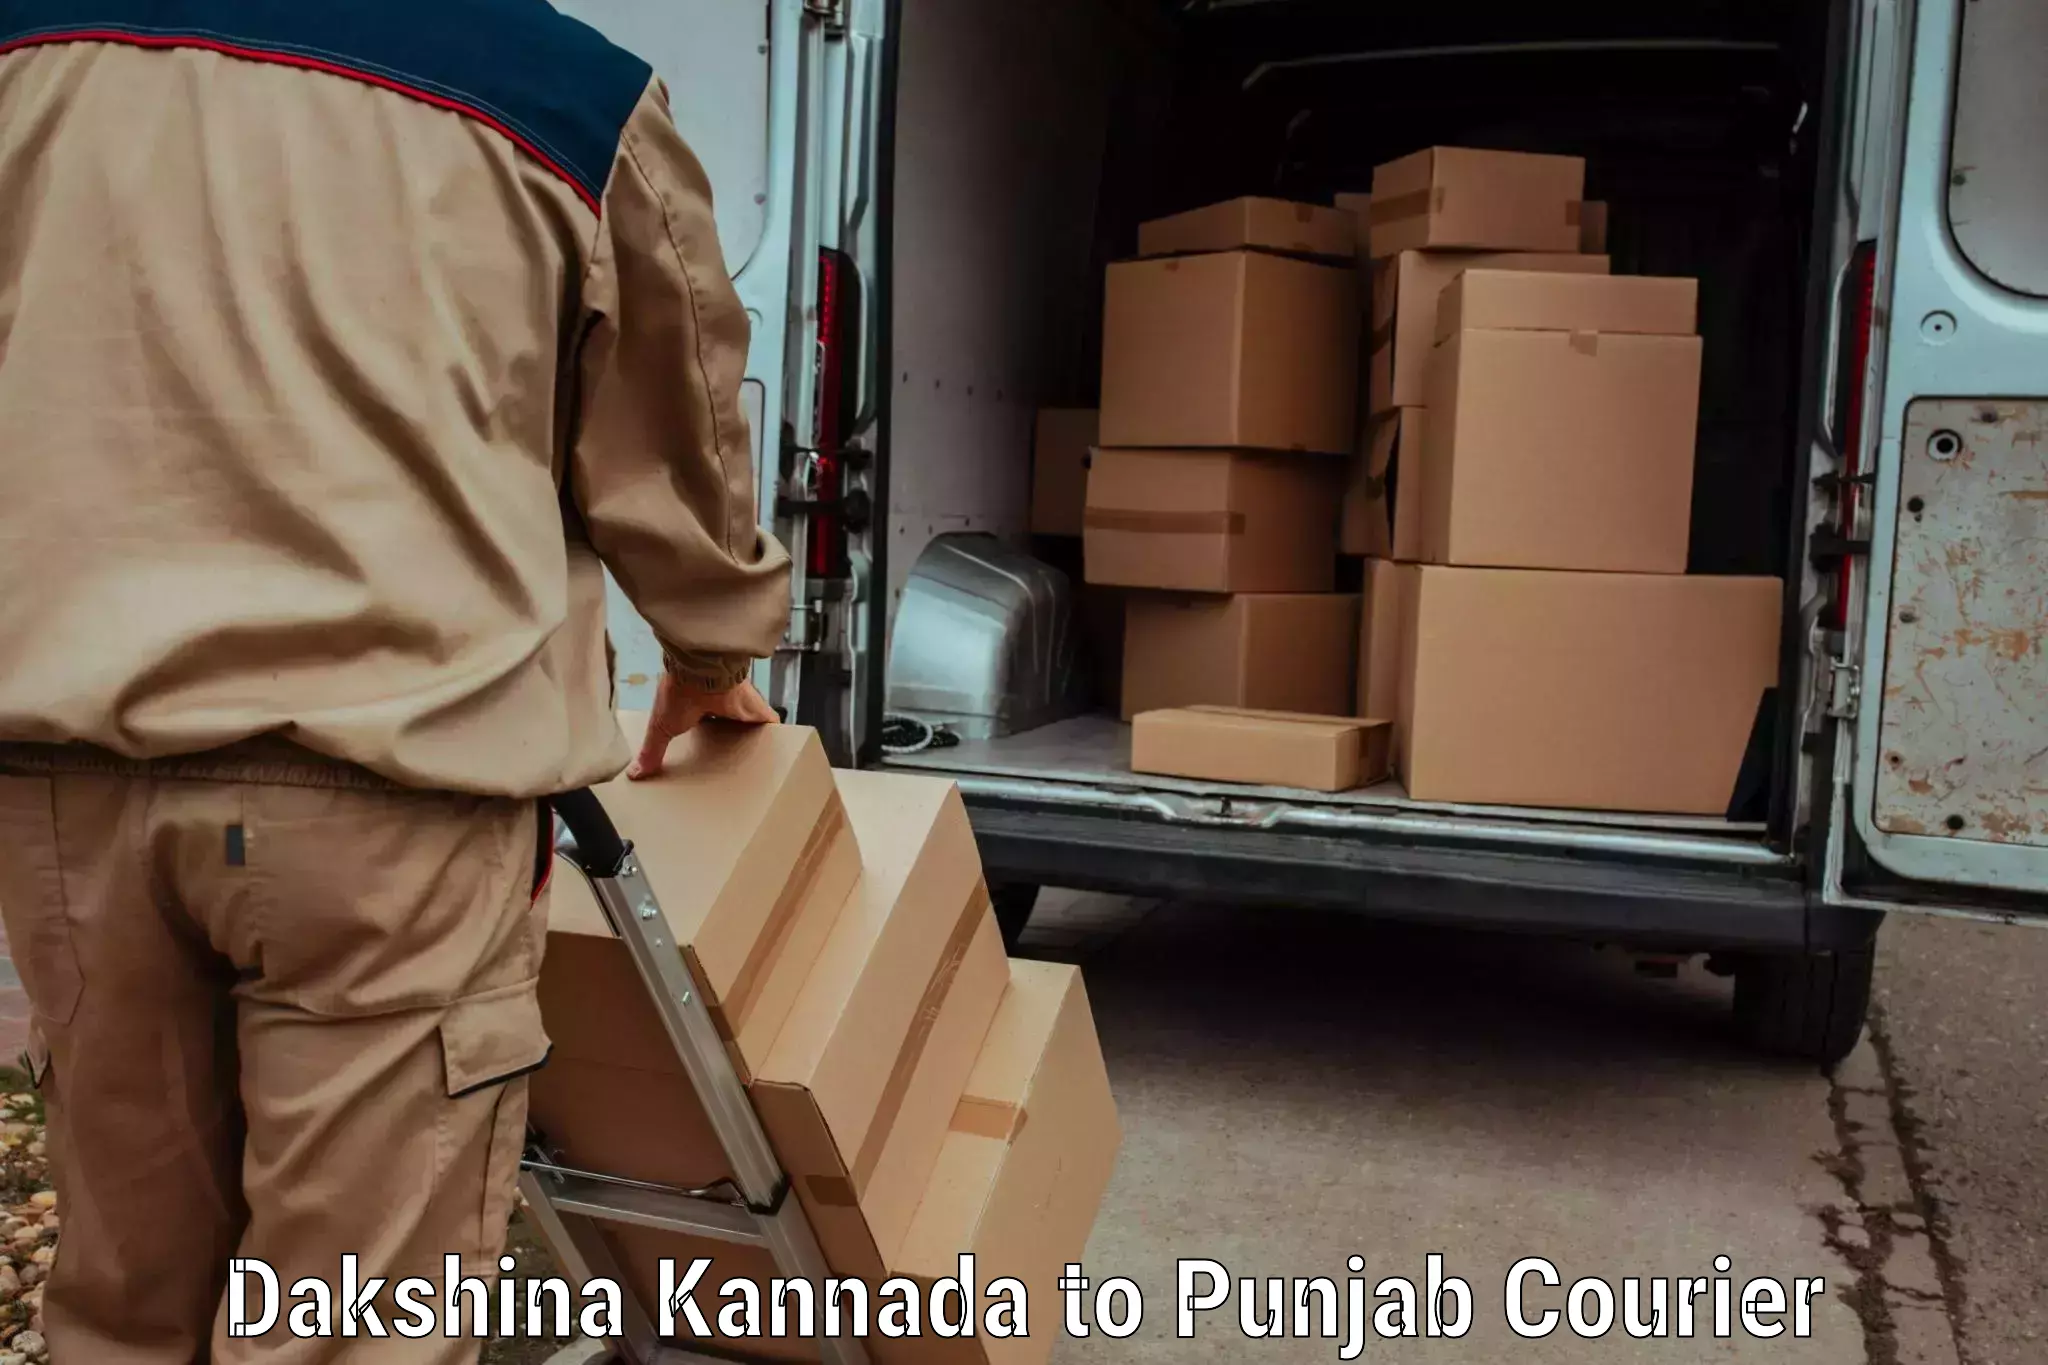 Versatile courier offerings Dakshina Kannada to Nangal